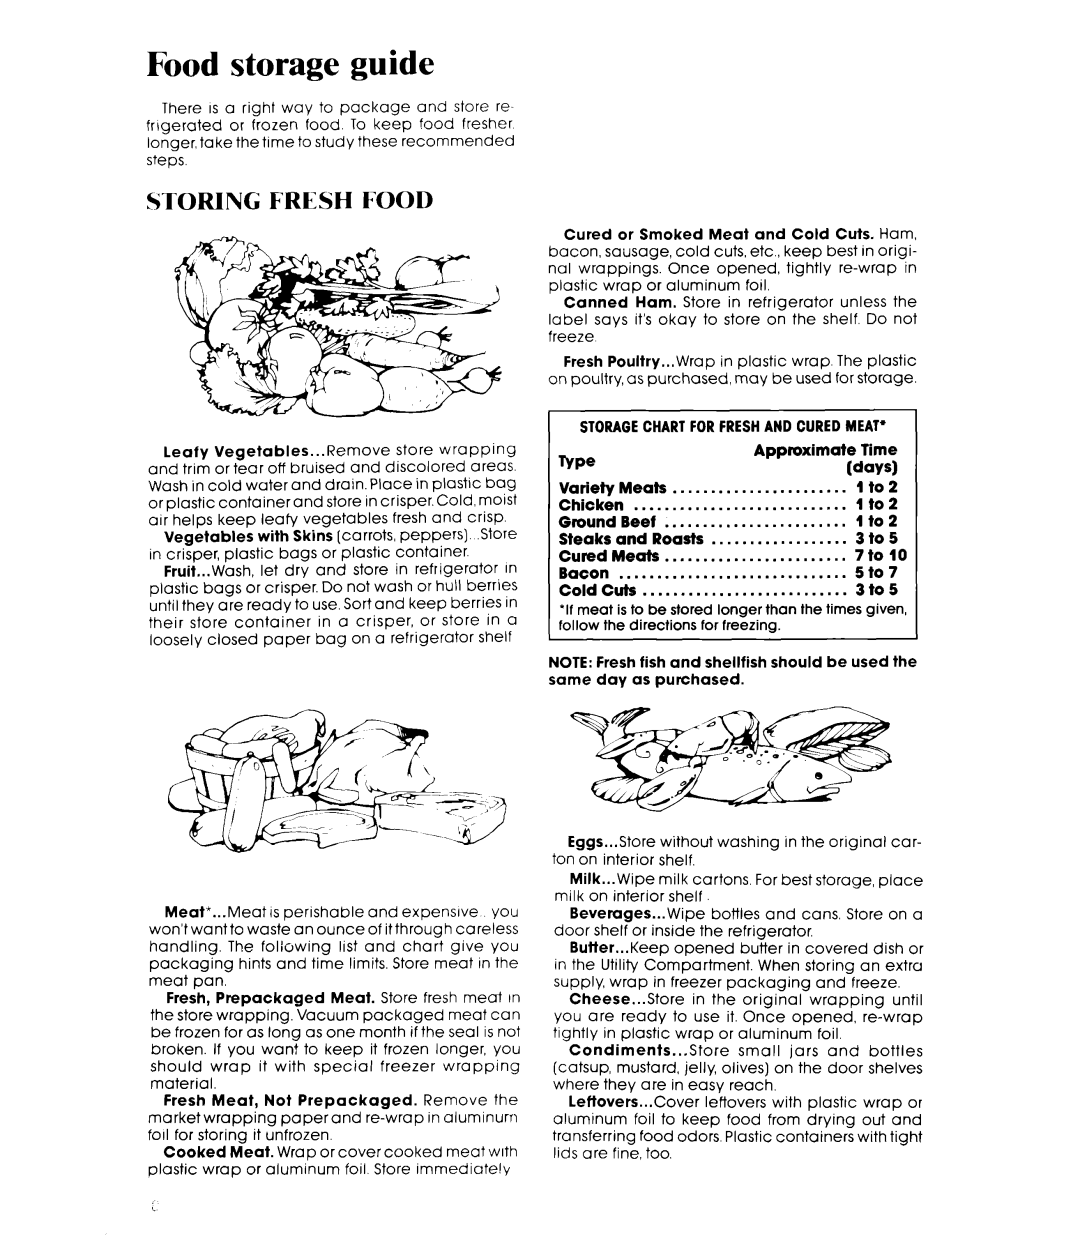 Whirlpool ET18HK, ETl8GK manual Food storage guide, Storing Fresh Food 